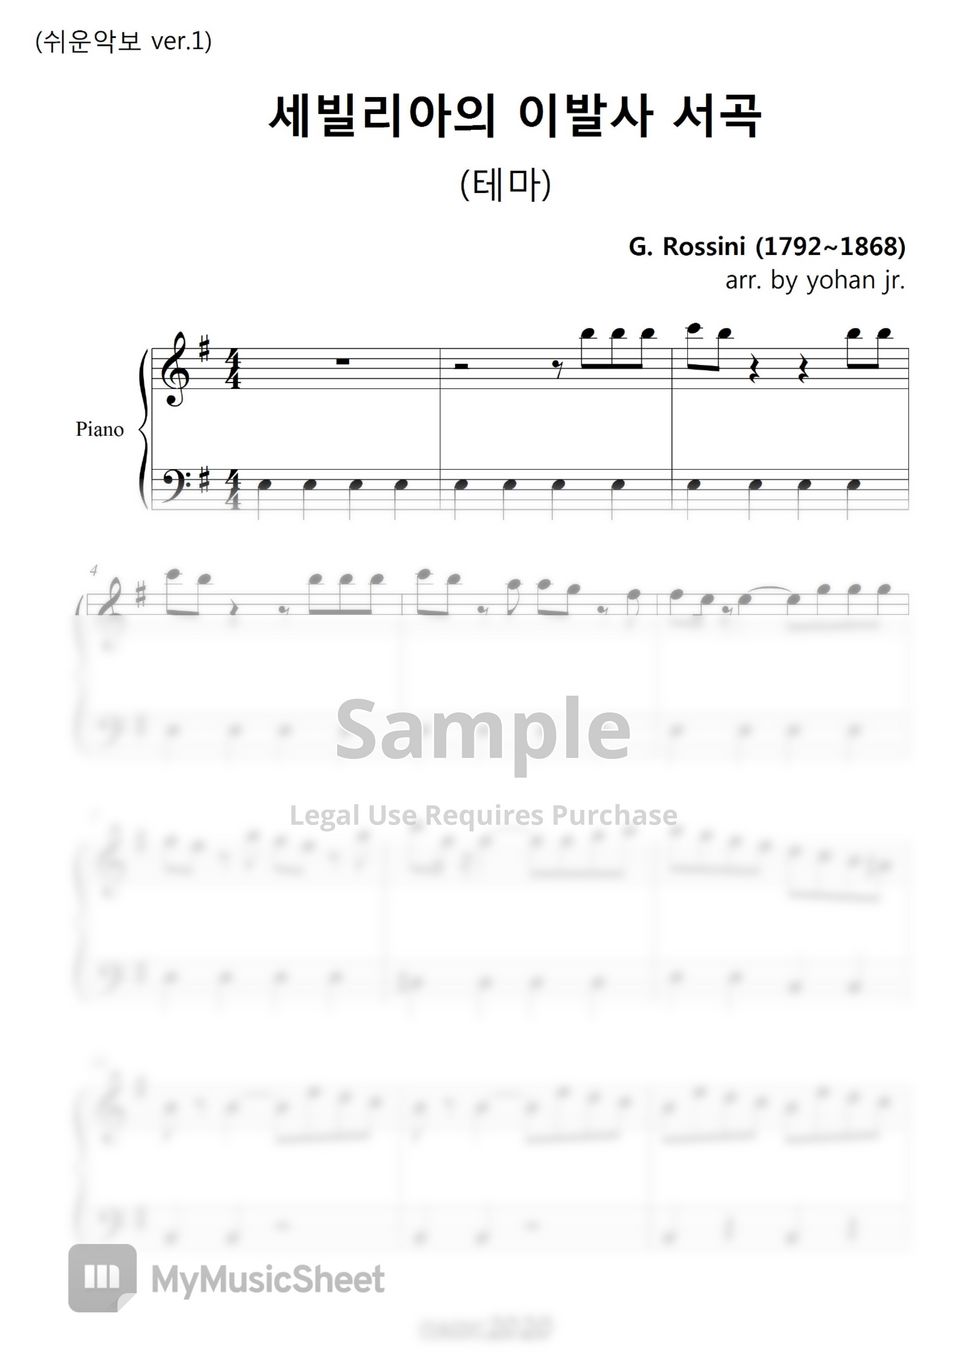 G. Rossini - G. Rossini (easy piano ver.1) by classic2020